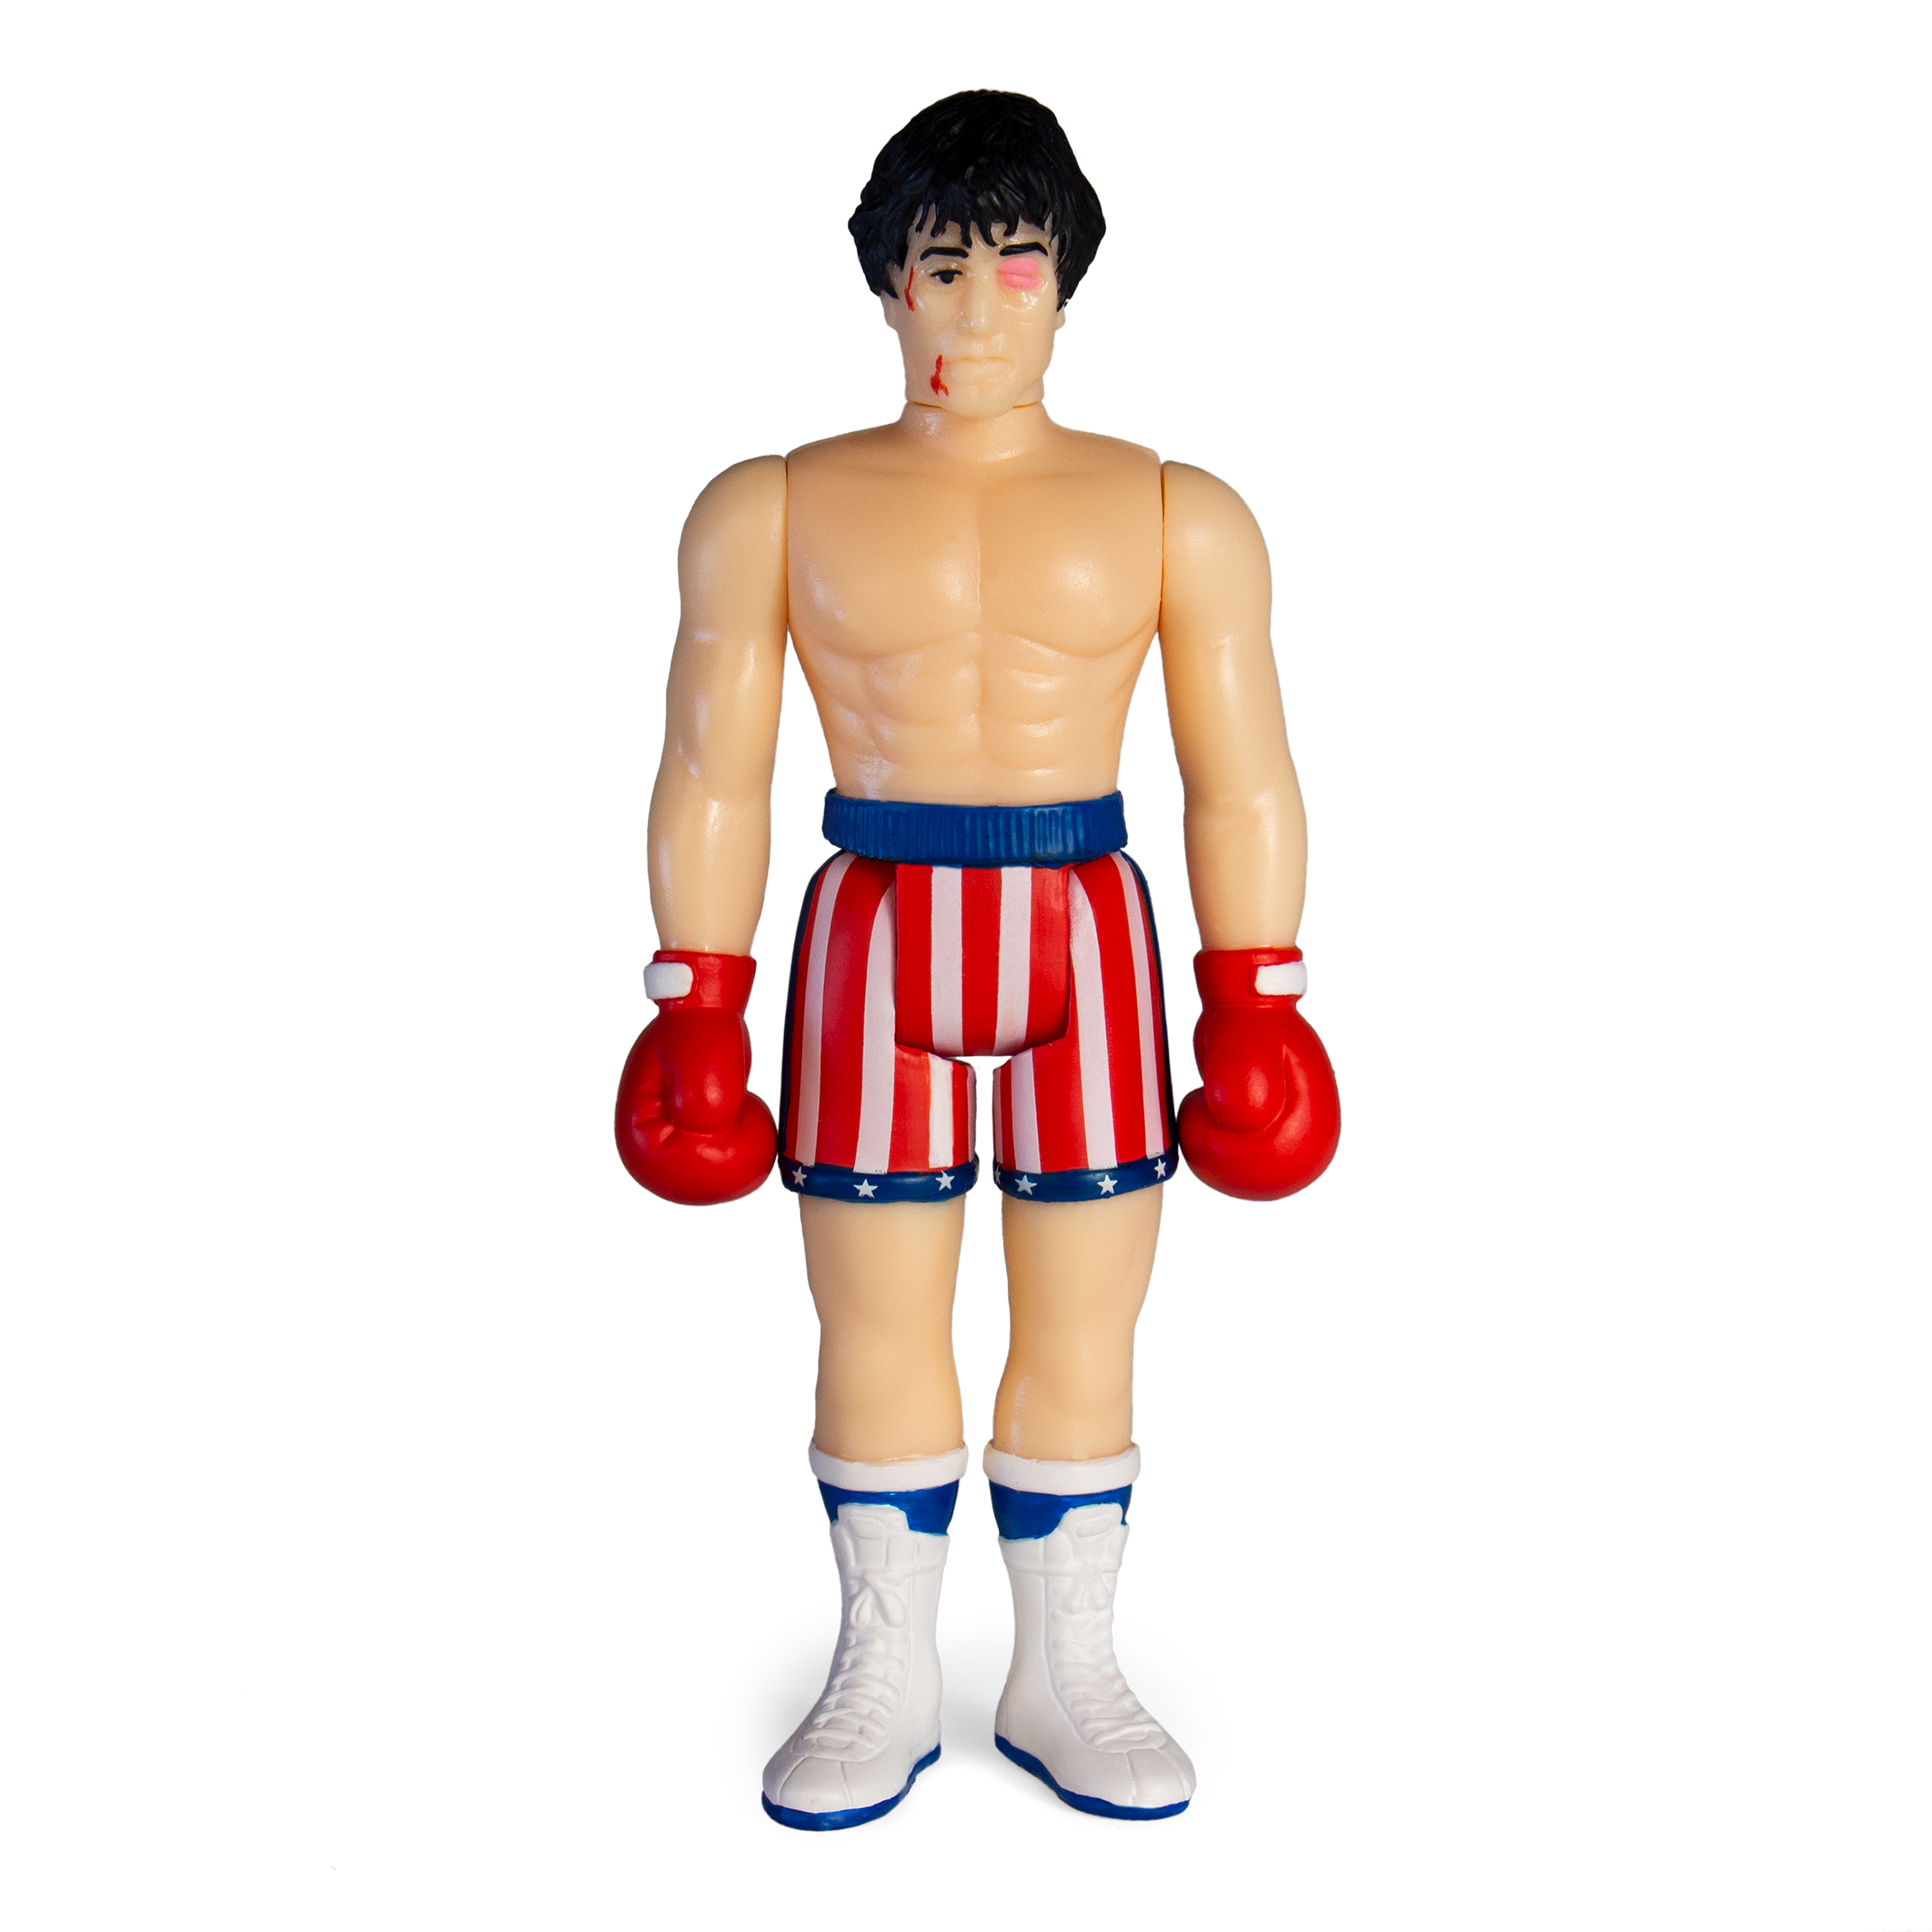 Rocky ReAction Figure - Rocky (Beat-Up)